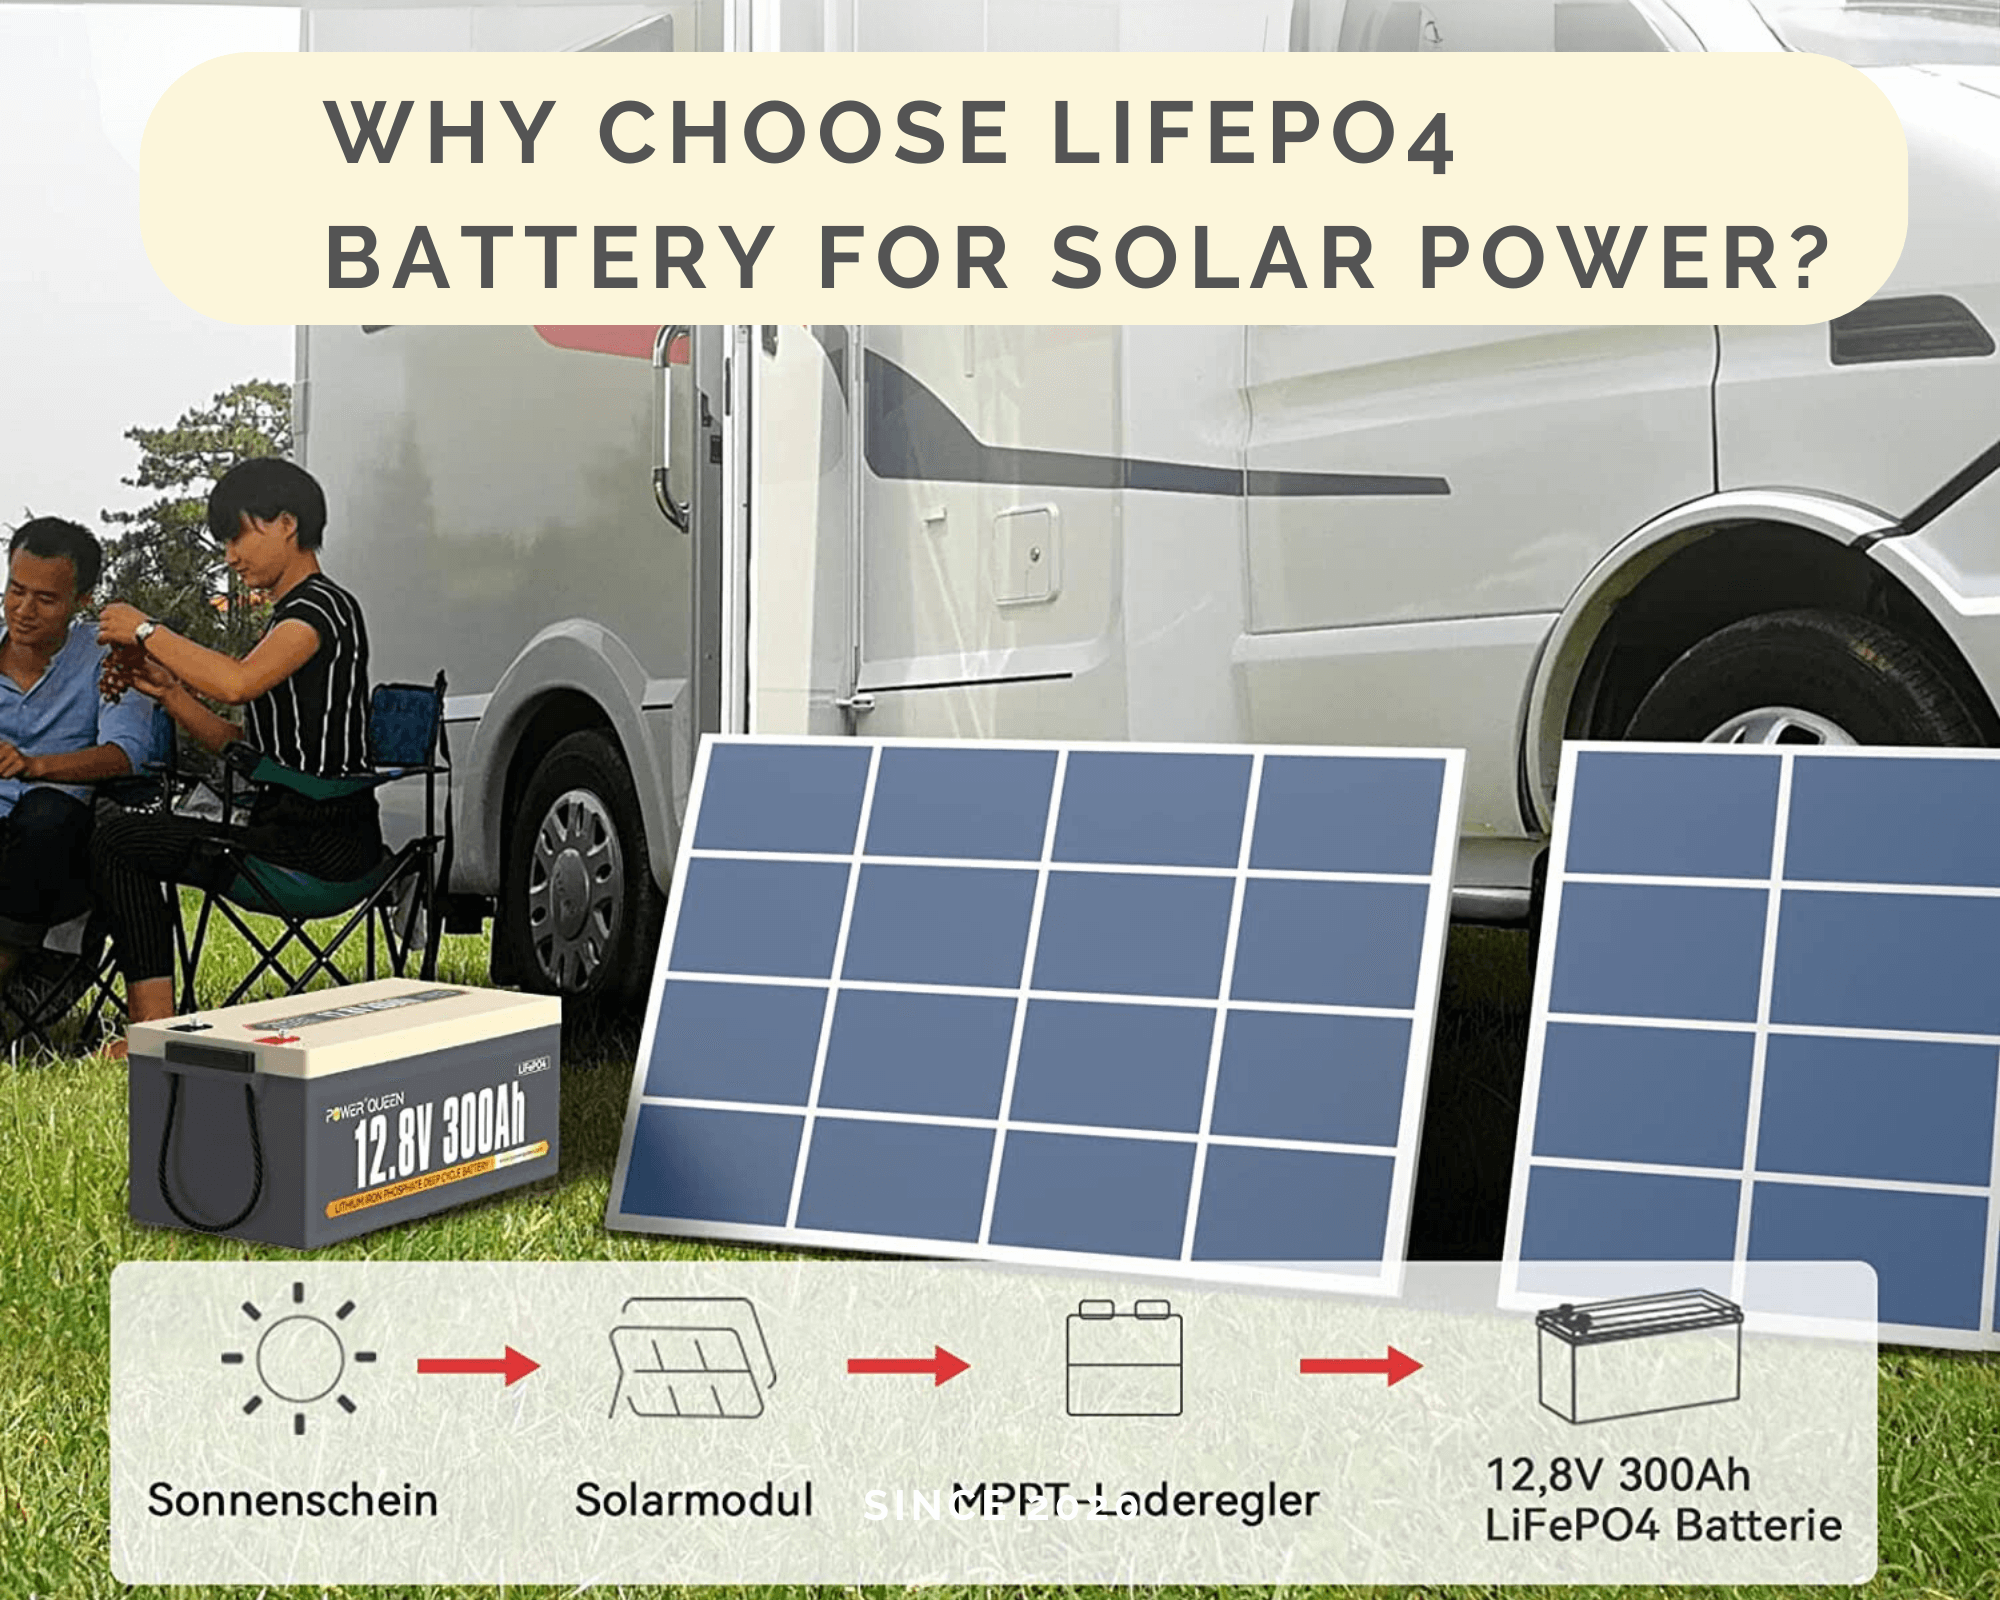 Por qué elegir la batería LiFePO4 para energía solar?